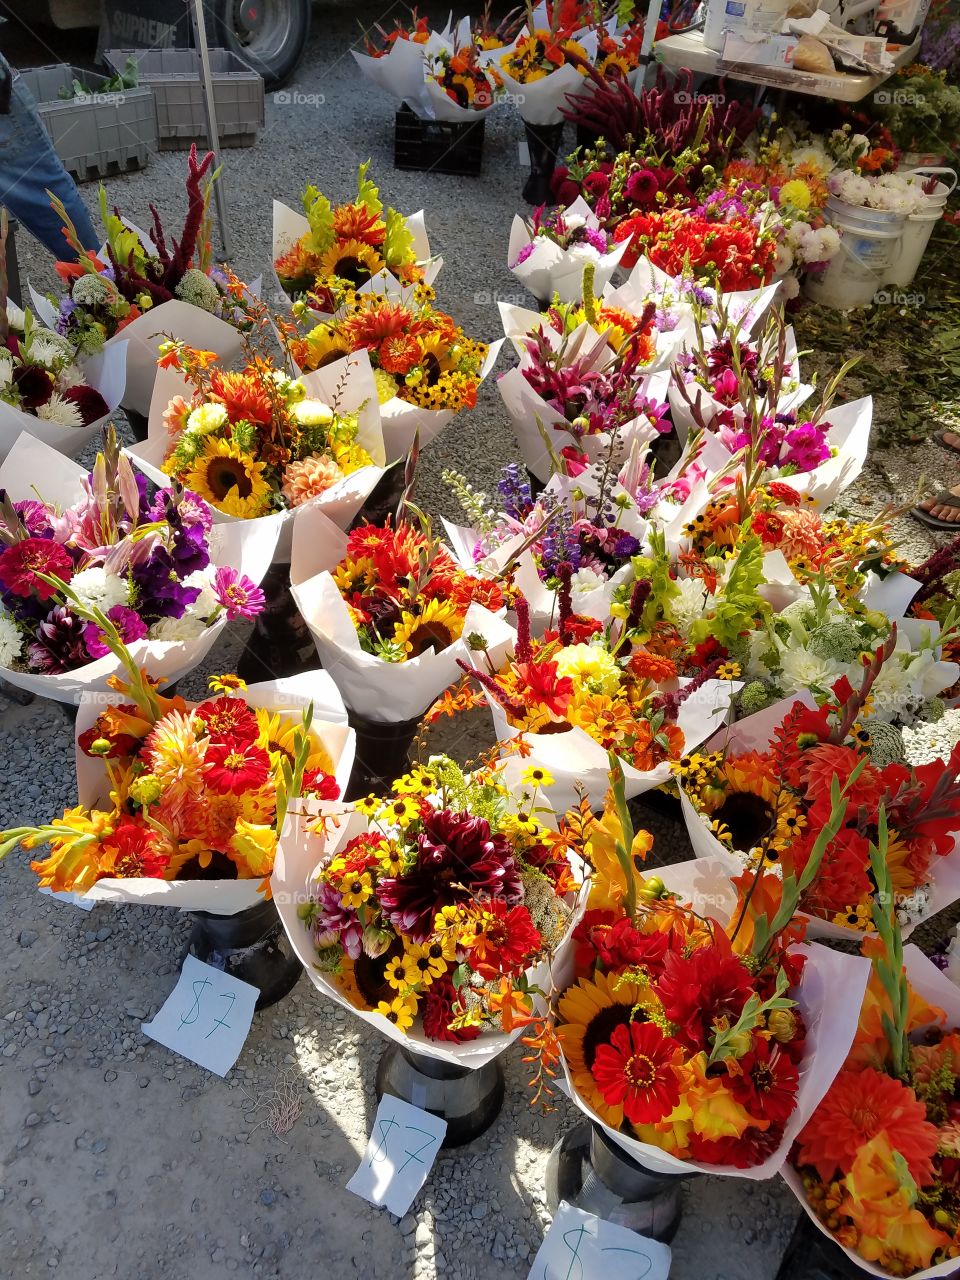 market flowers